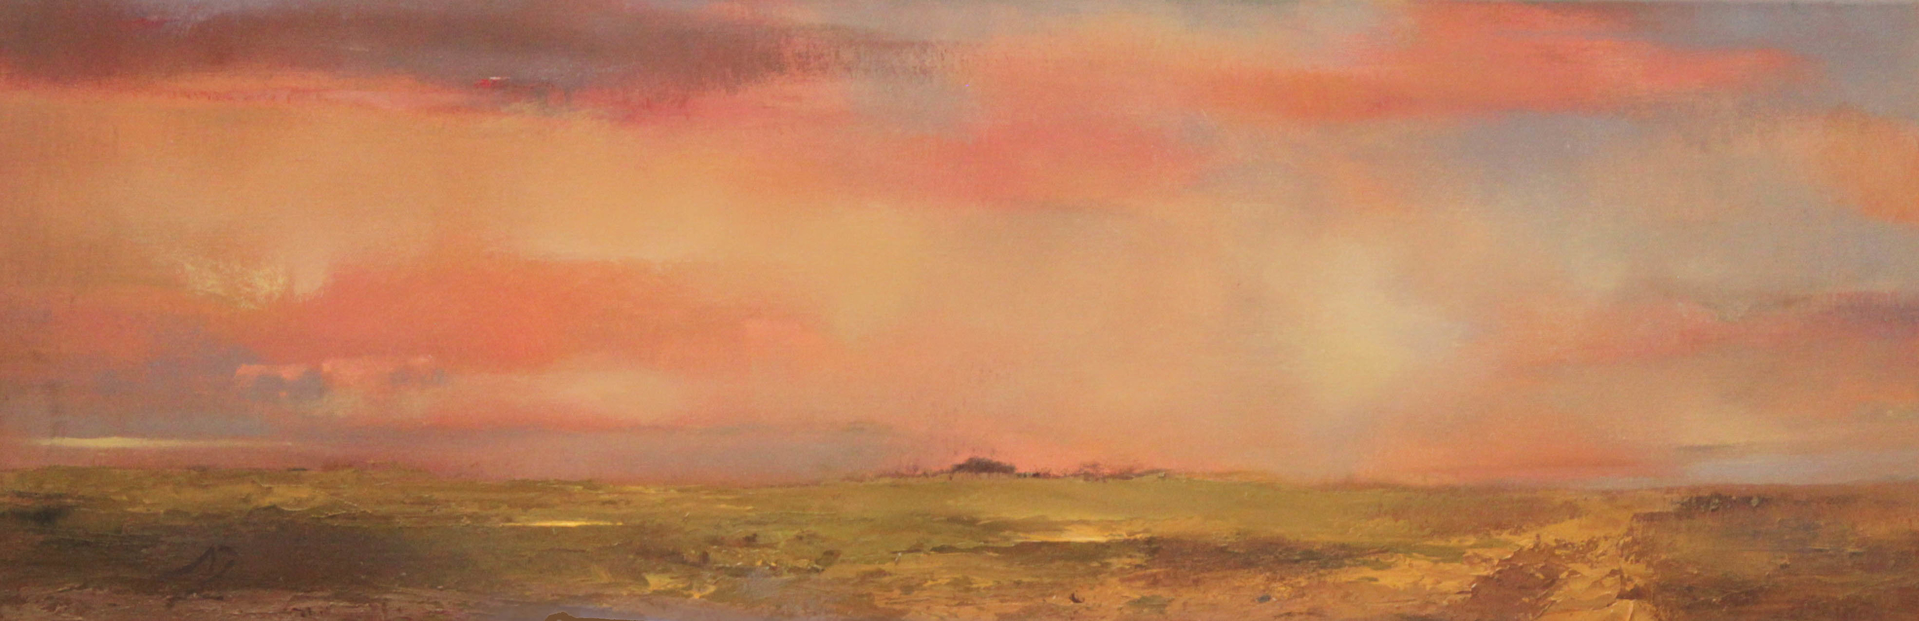 Tucumcari Prairie 831 by Albert Scharf